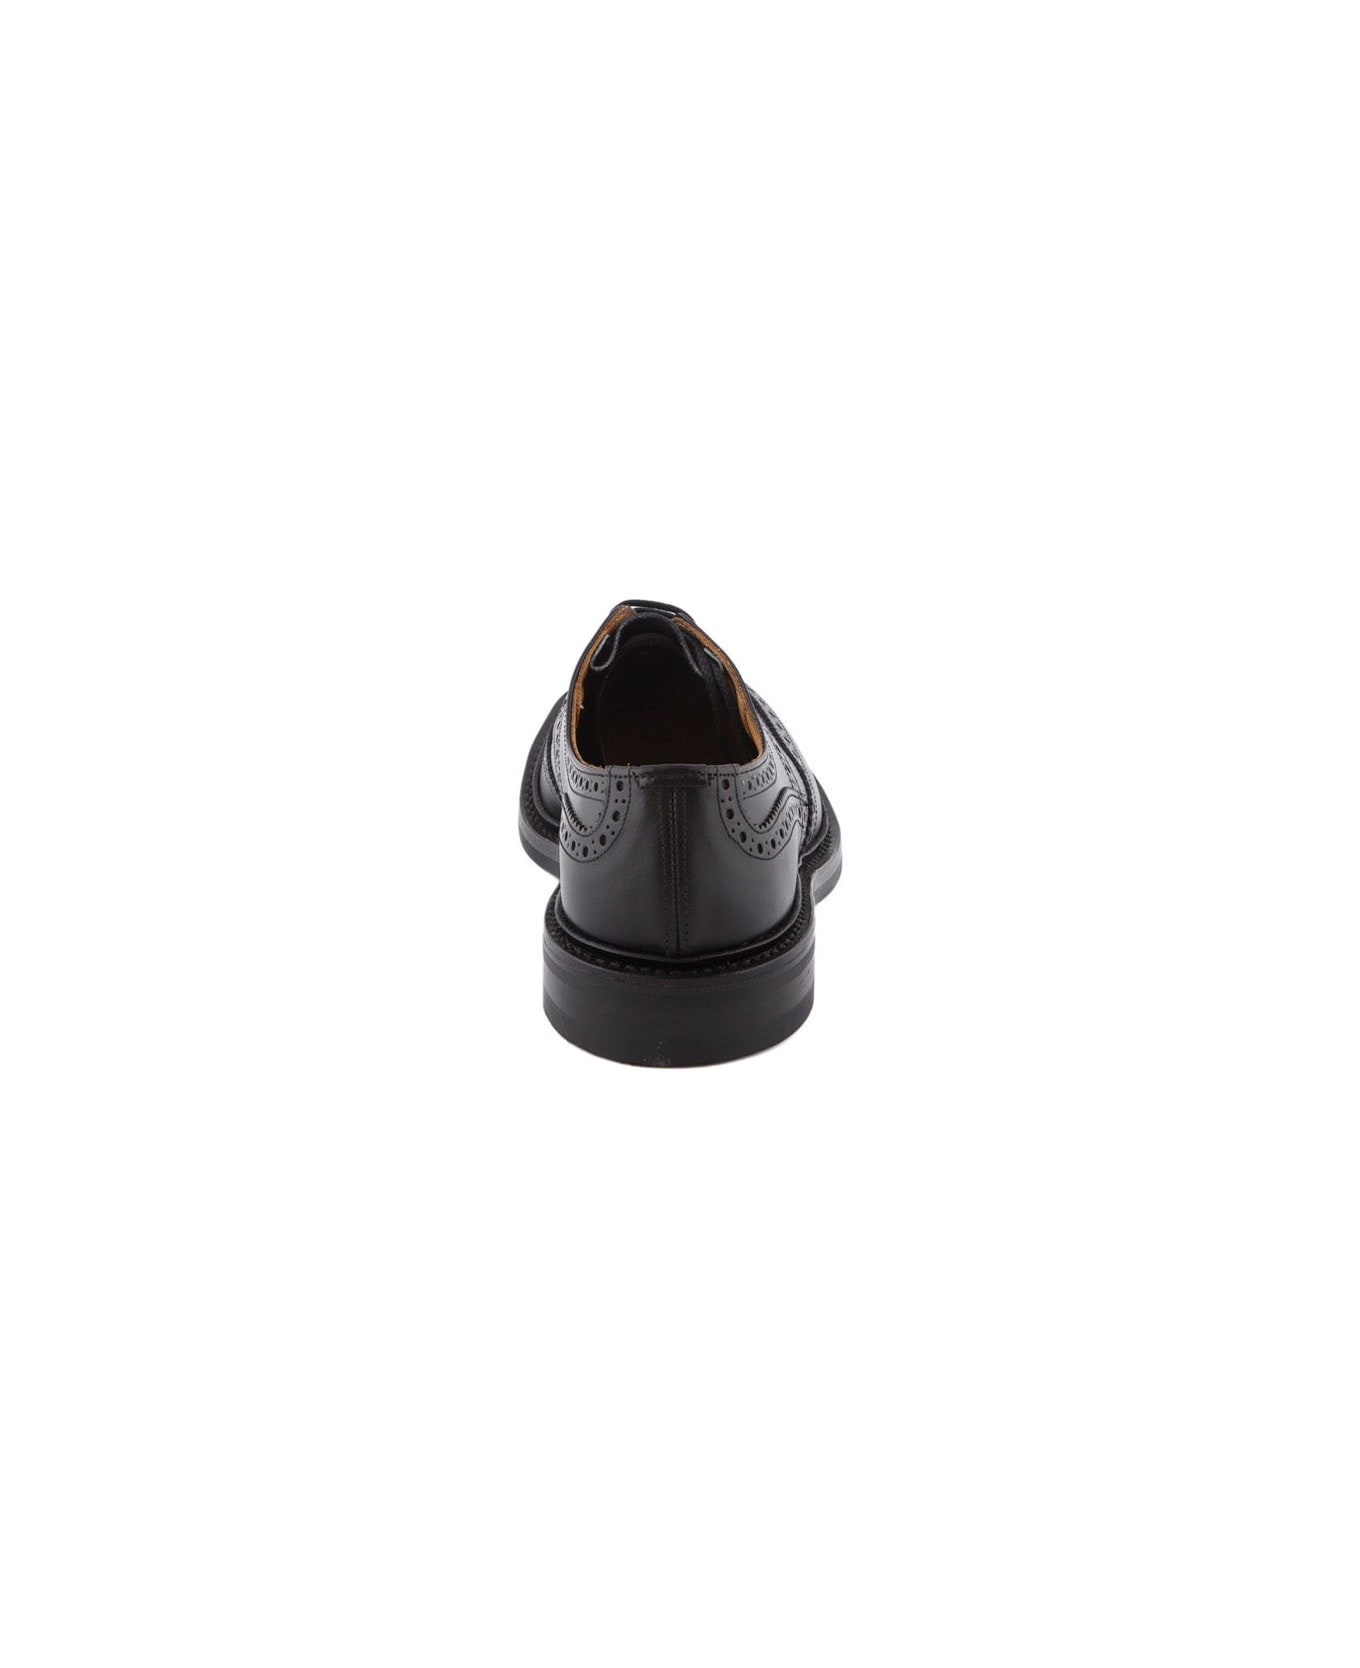 Tricker's Bourton Black Box Calf Derby Shoe (dainite Sole) - Nero